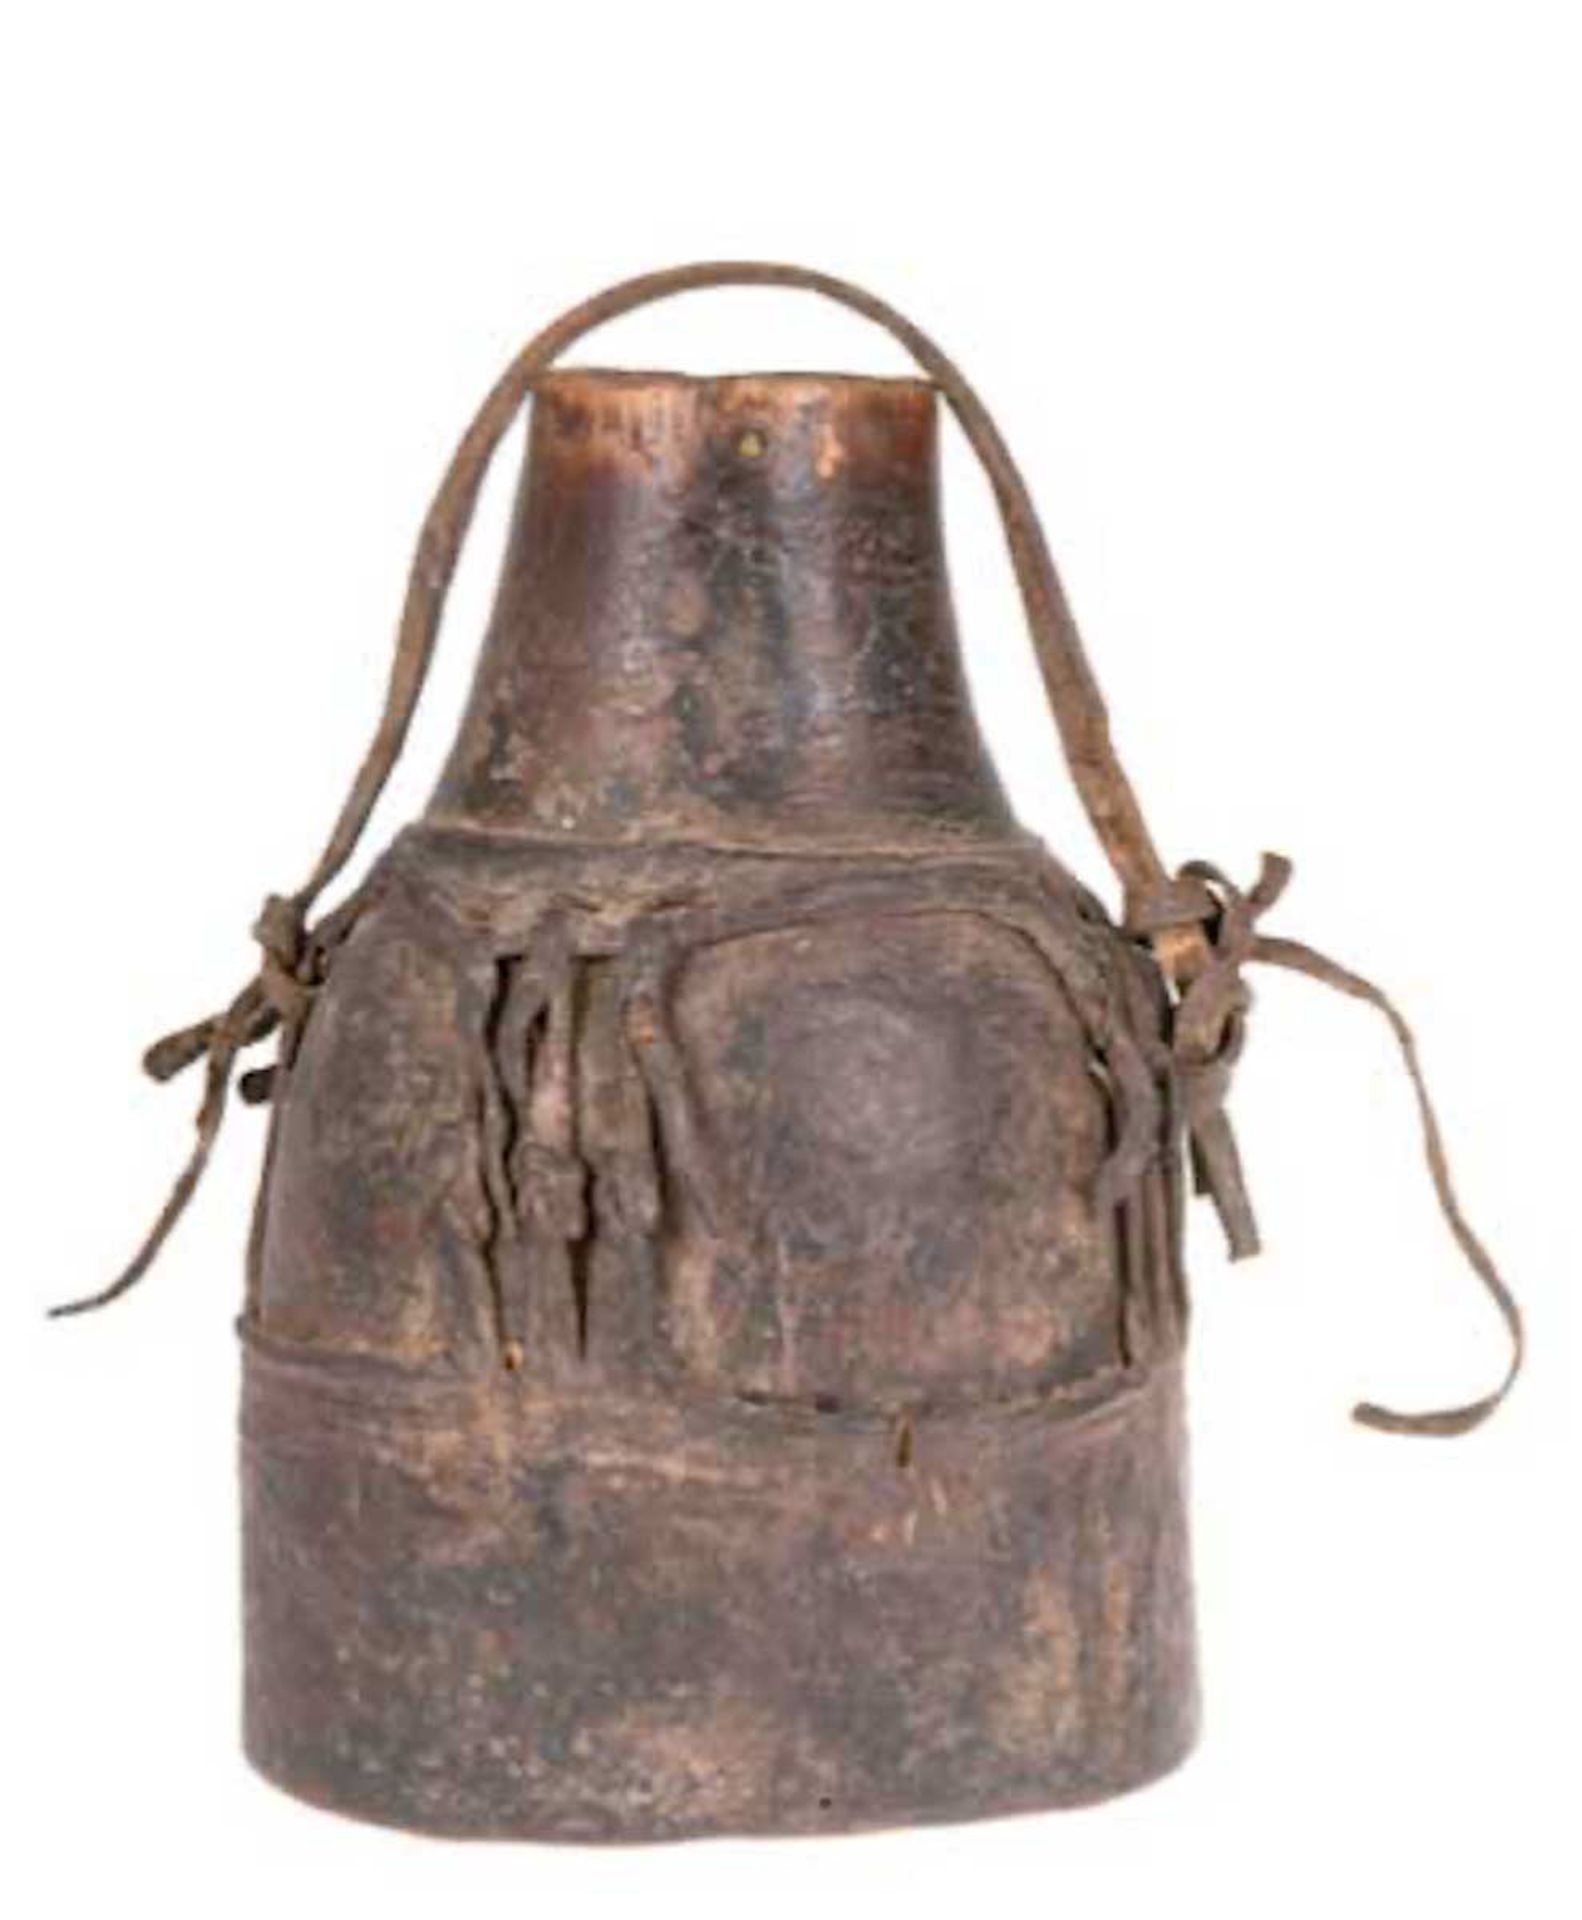 Afrikanische Wasserflasche, gegerbtes Leder, Ummantelung geflochten, mit Trageband, H. 22cm